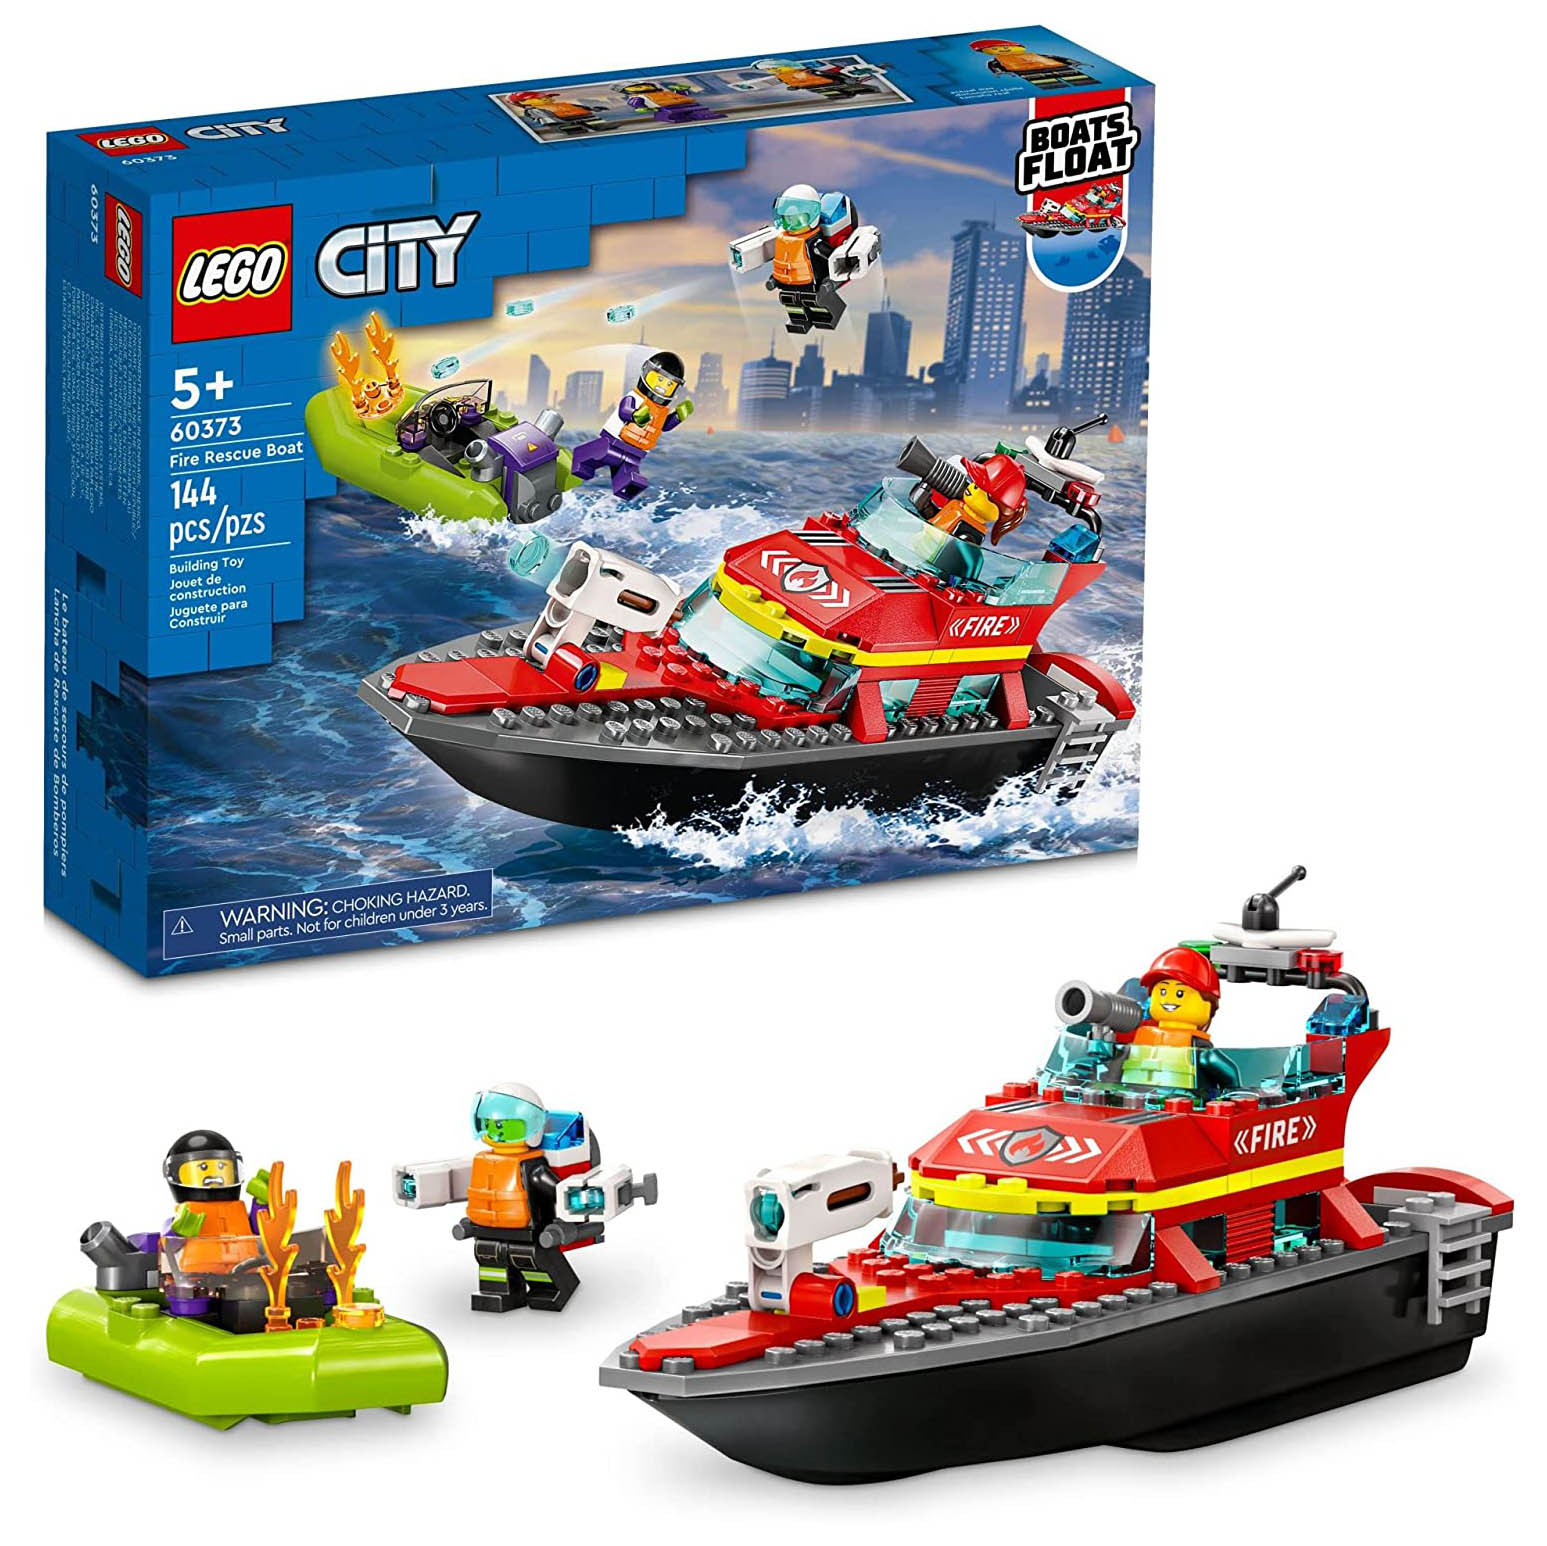 Конструктор LEGO City Пожарная спасательная лодка, 144 детали, 60373 конструктор lego city fire пожарная команда быстрого реагирования 60108